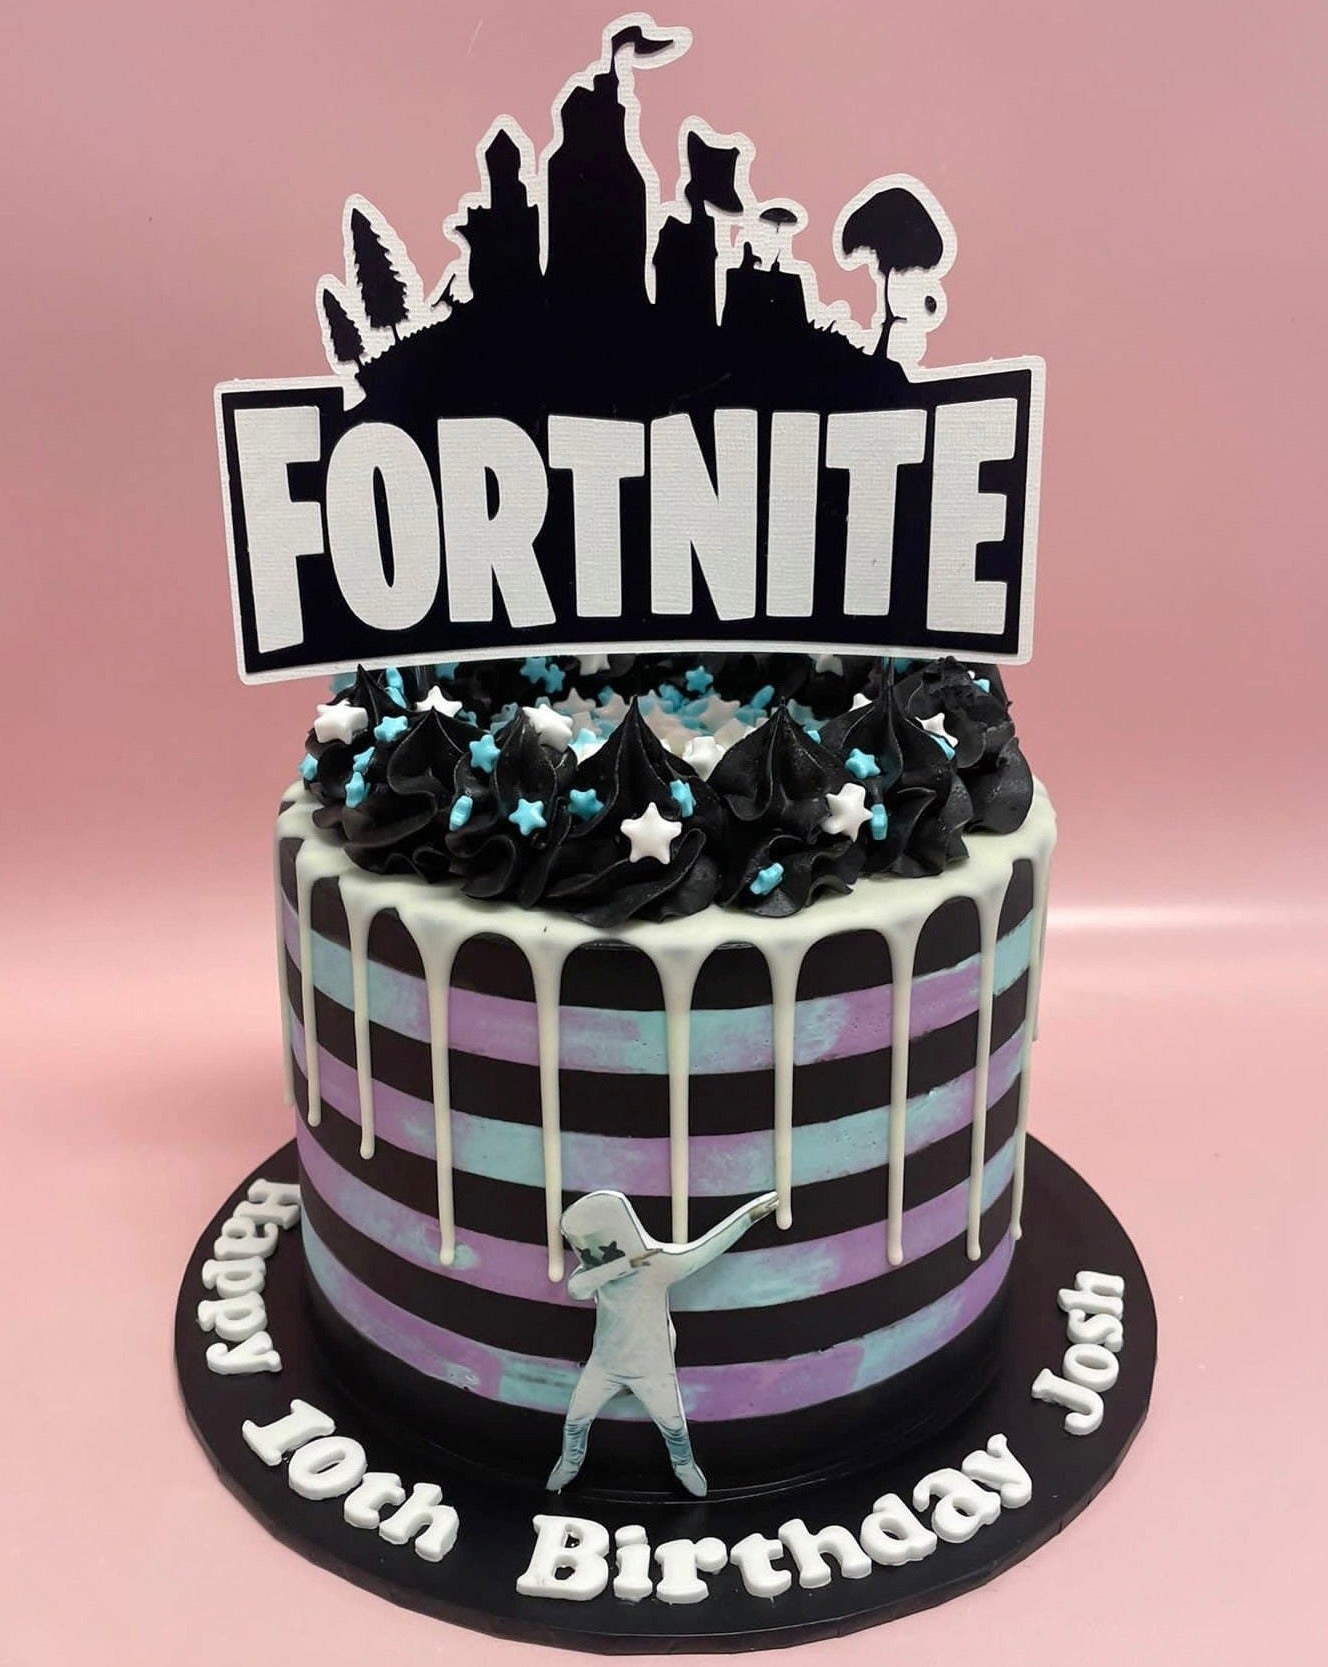 Fortnite Specialty Cake